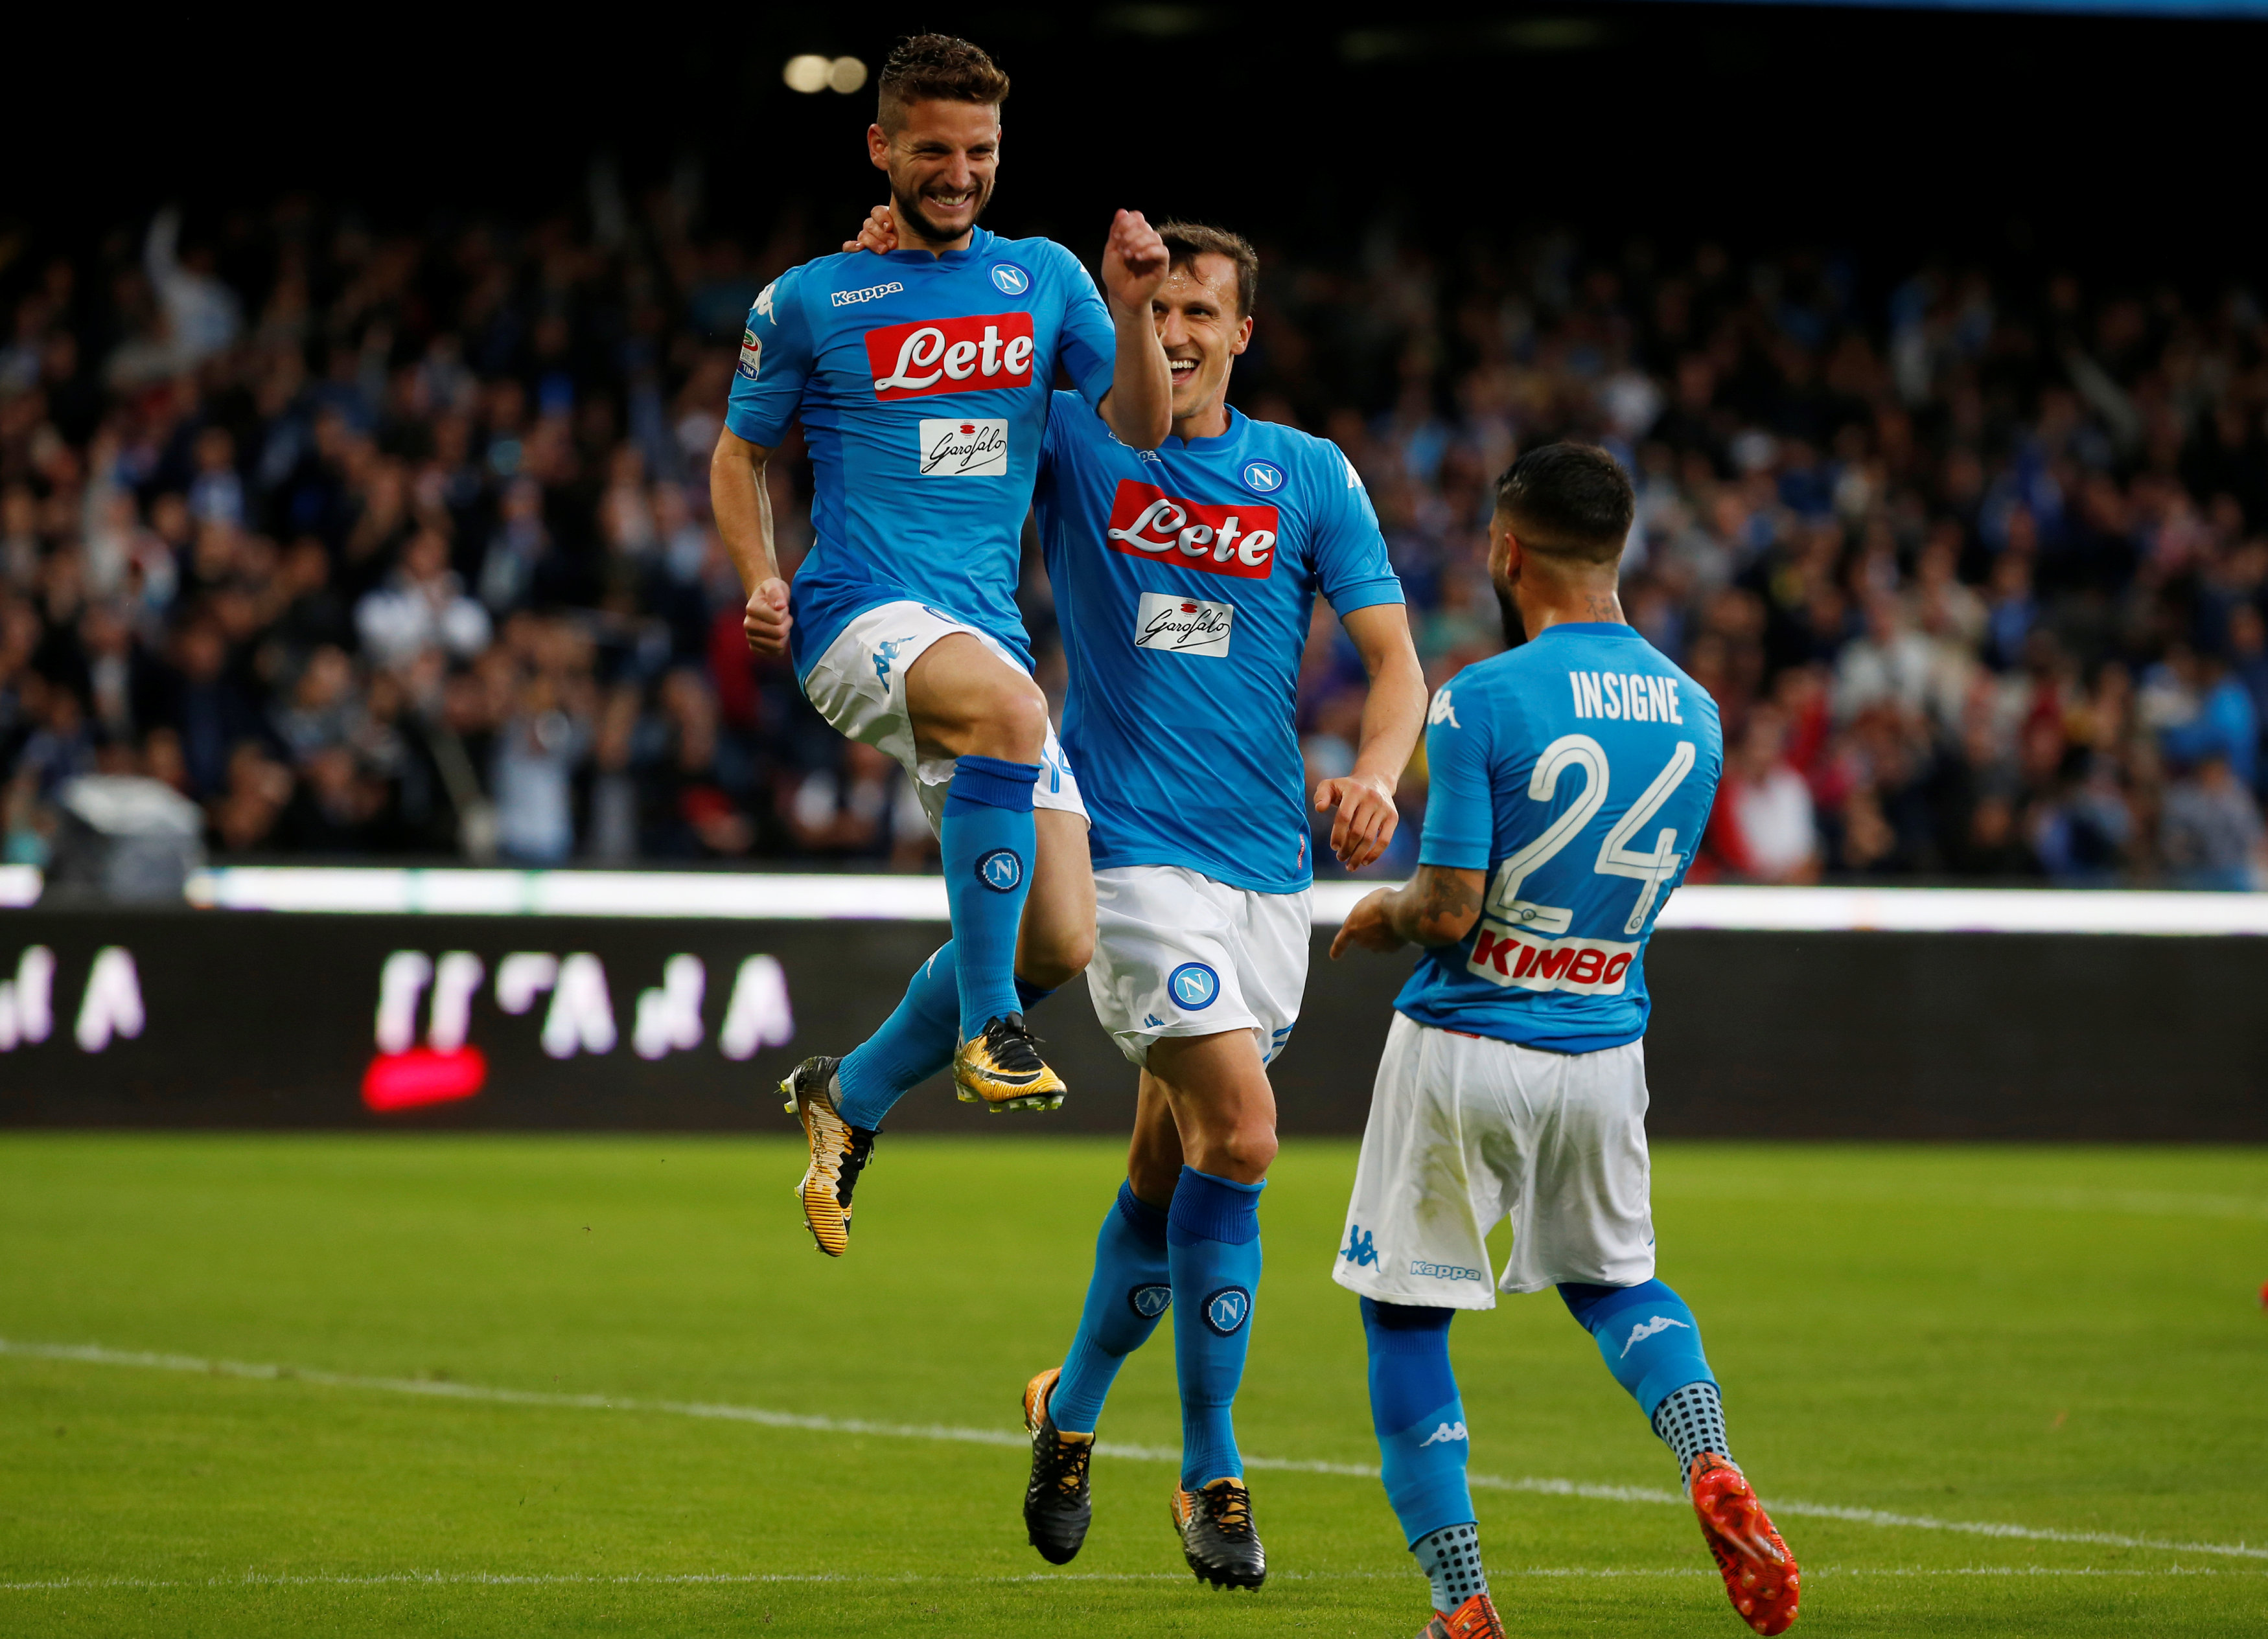 Niềm vui của Mertens sau khi nâng tỉ số lên 3-1 cho Napoli. Ảnh: REUTERS